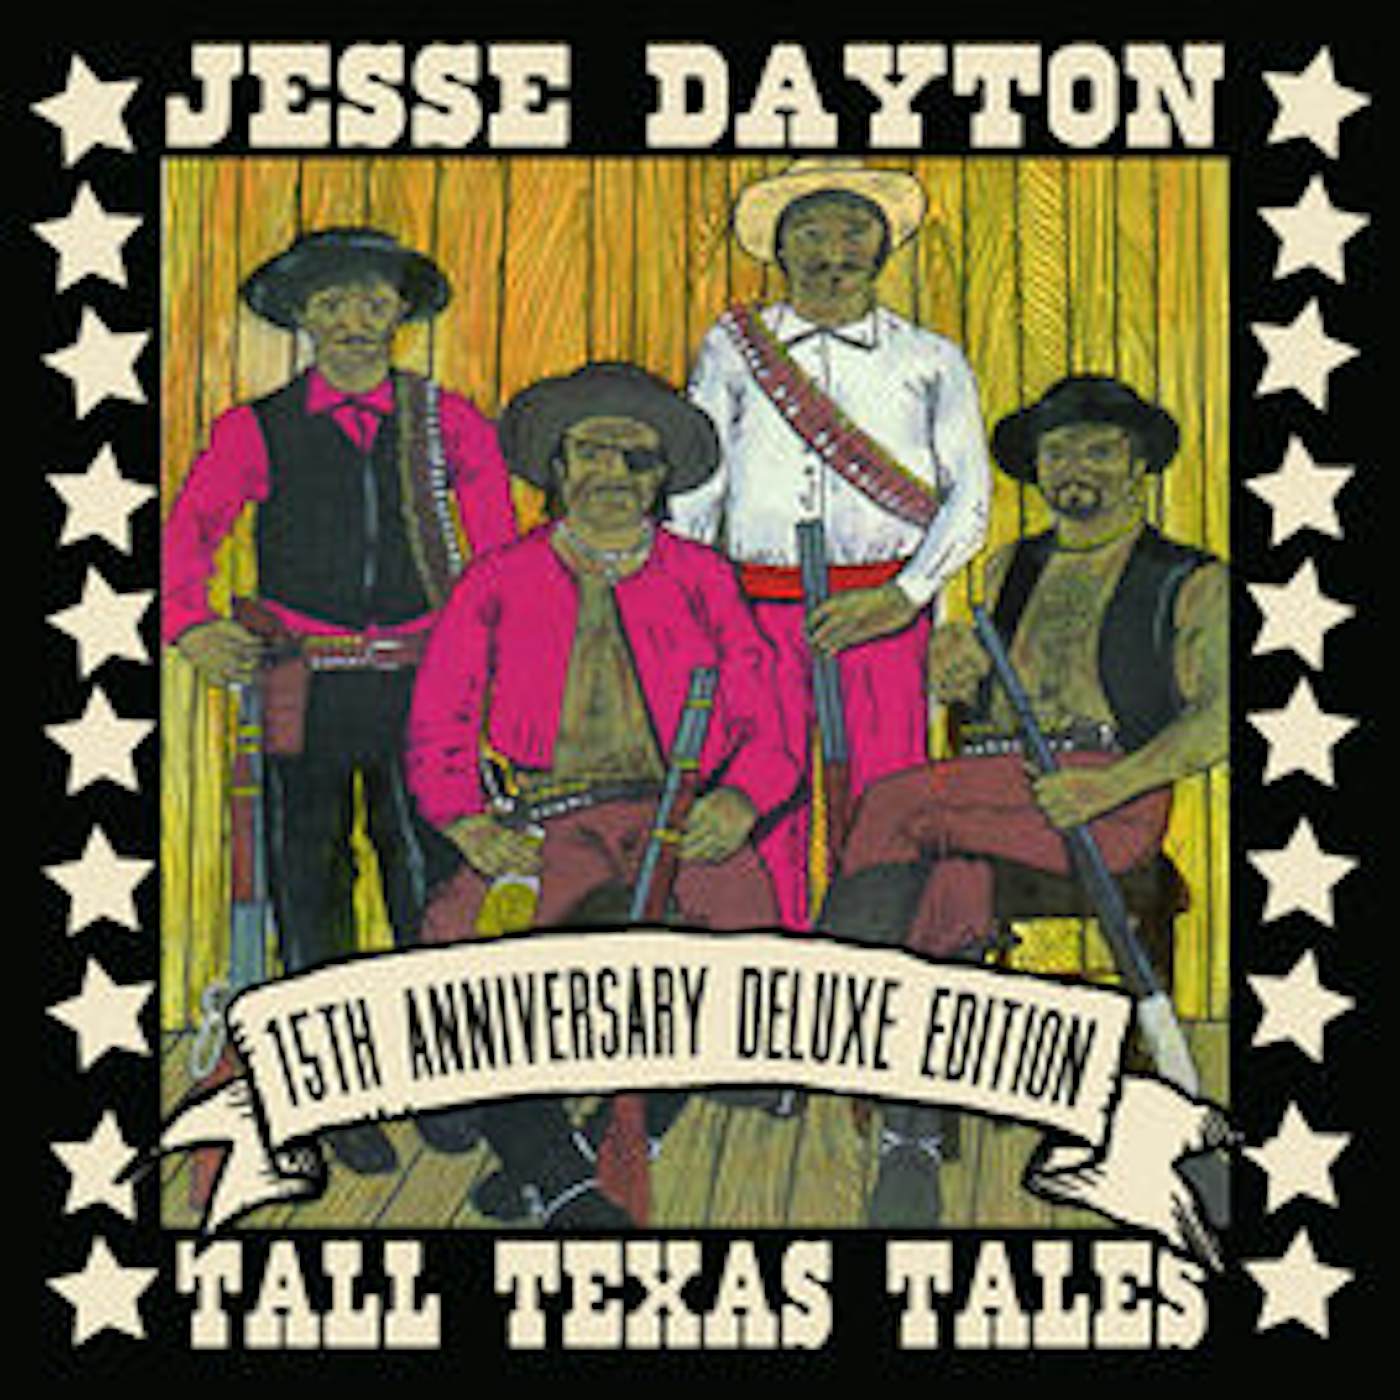 Jesse Dayton TALL TEXAS TALES CD